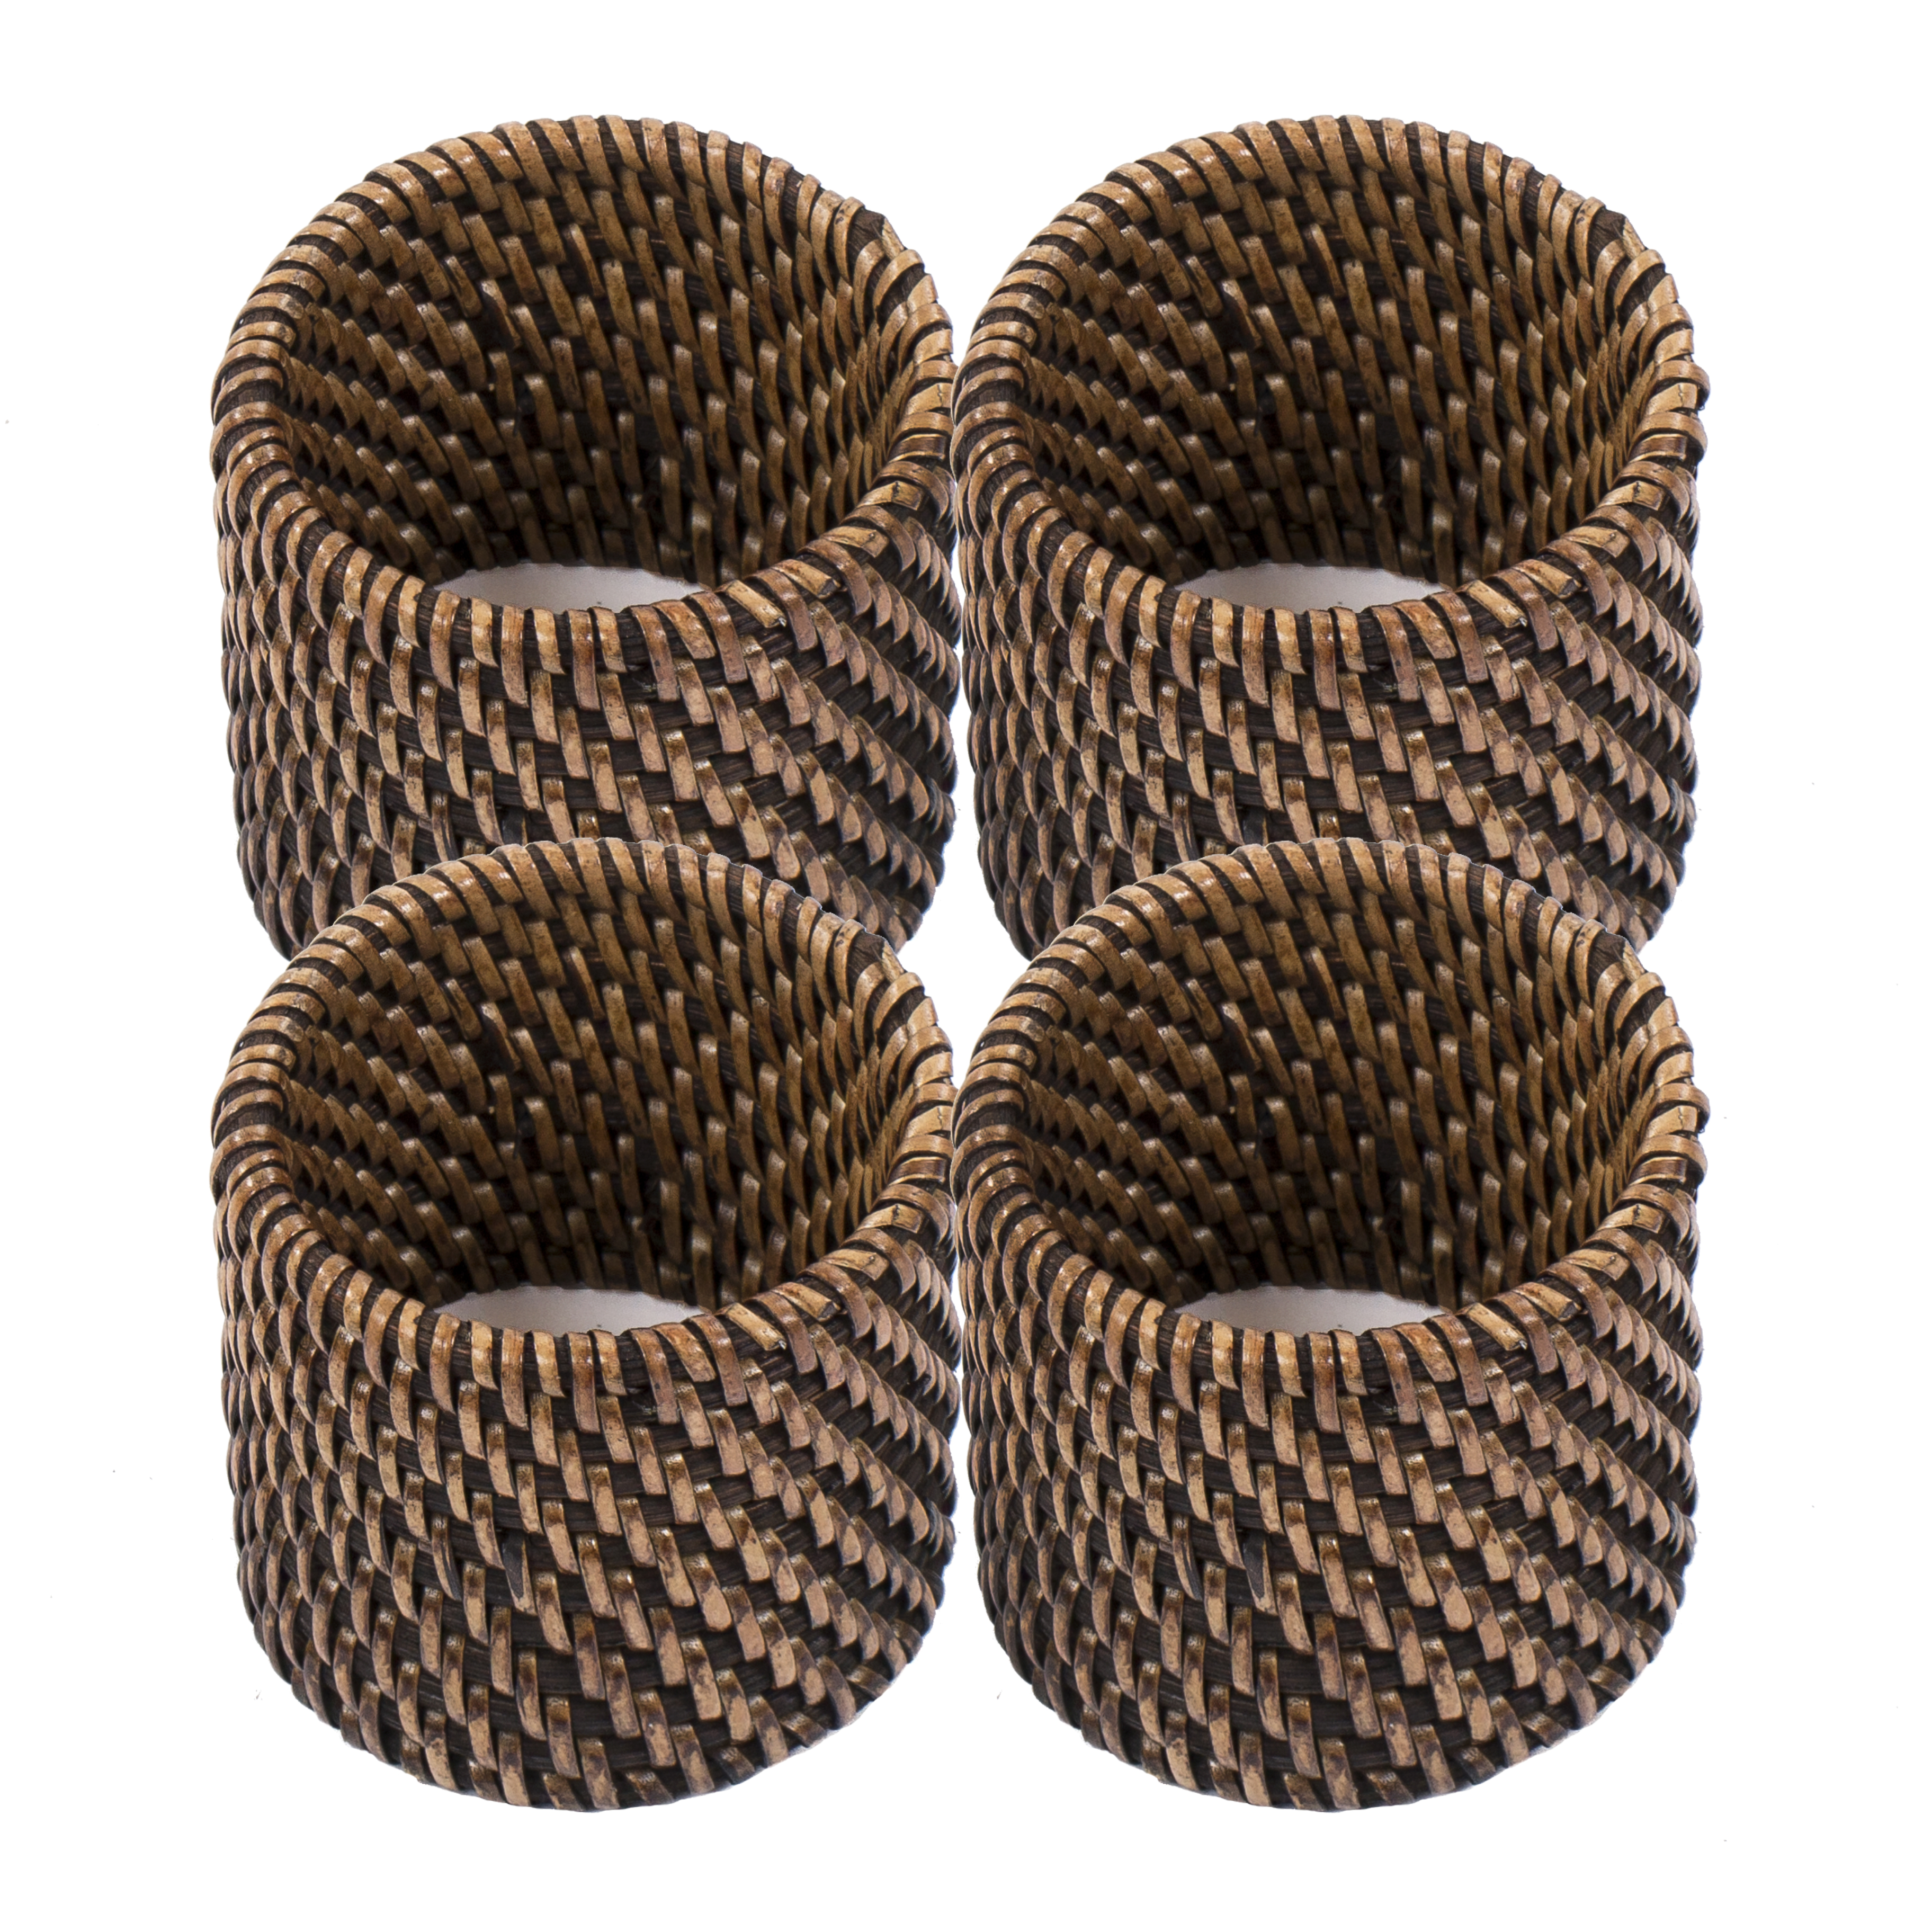 Ronds de serviette rattan 4.5x5 cm, set/4, brun foncé